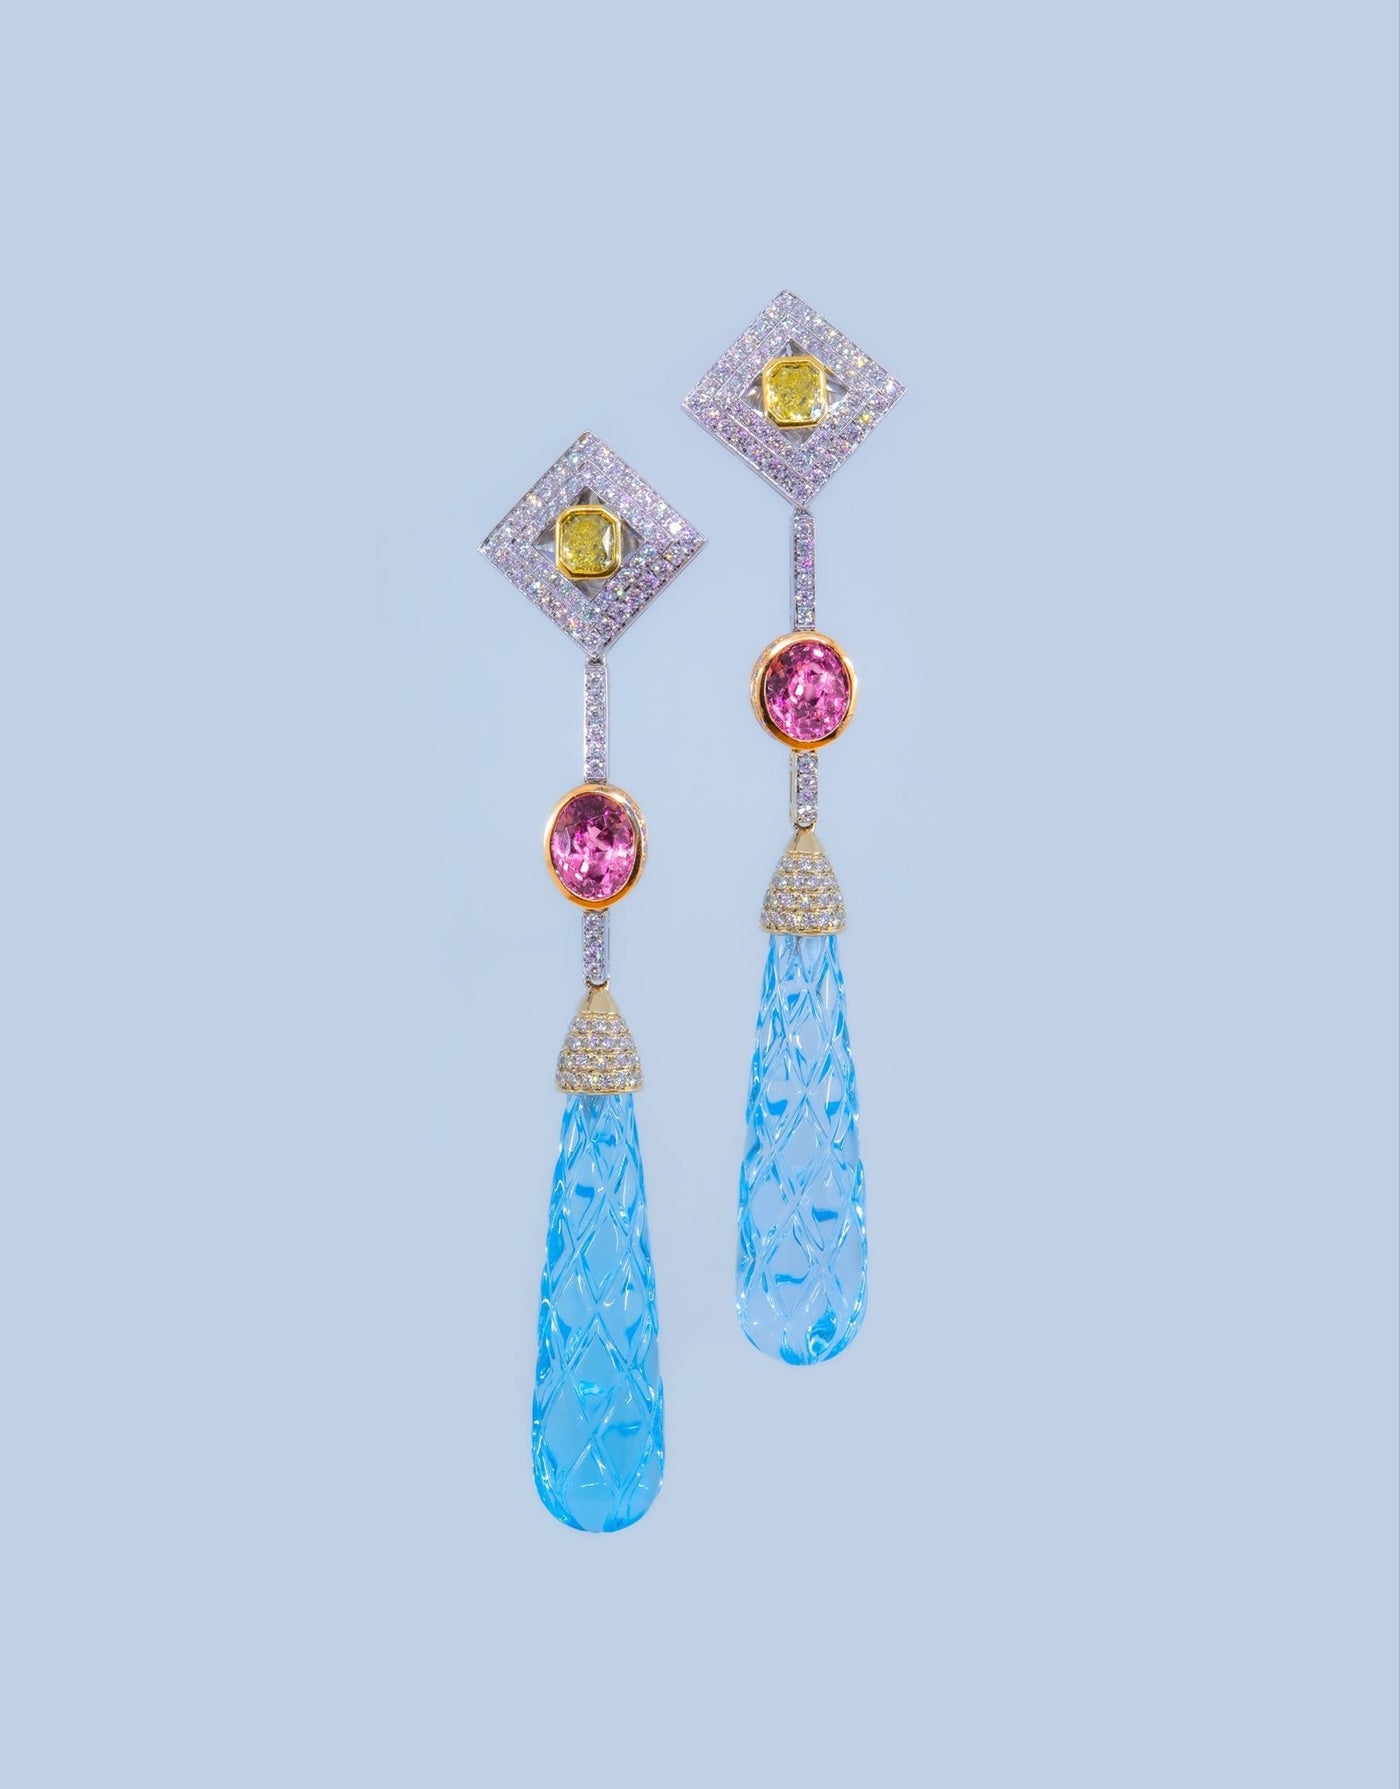 Multicolor gem-stone earrings "Waterfall" - Surround Art & Diamonds Jewelry by Surround Art & Diamonds